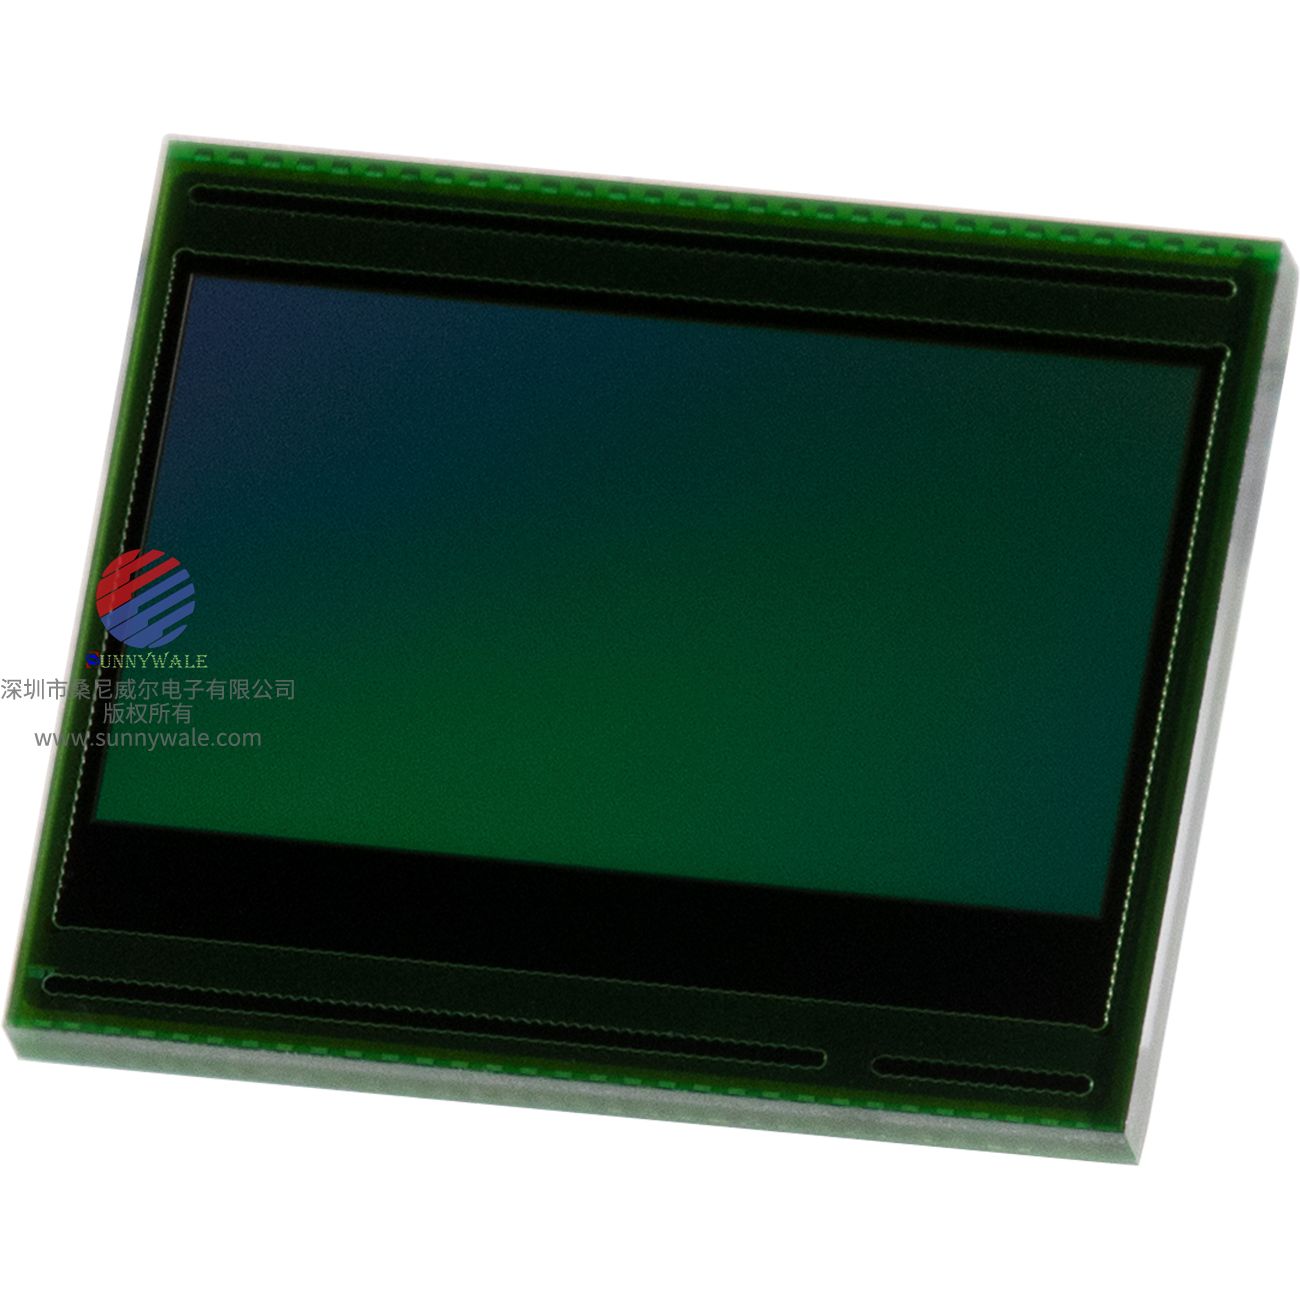  HDR CMOS图像传感器